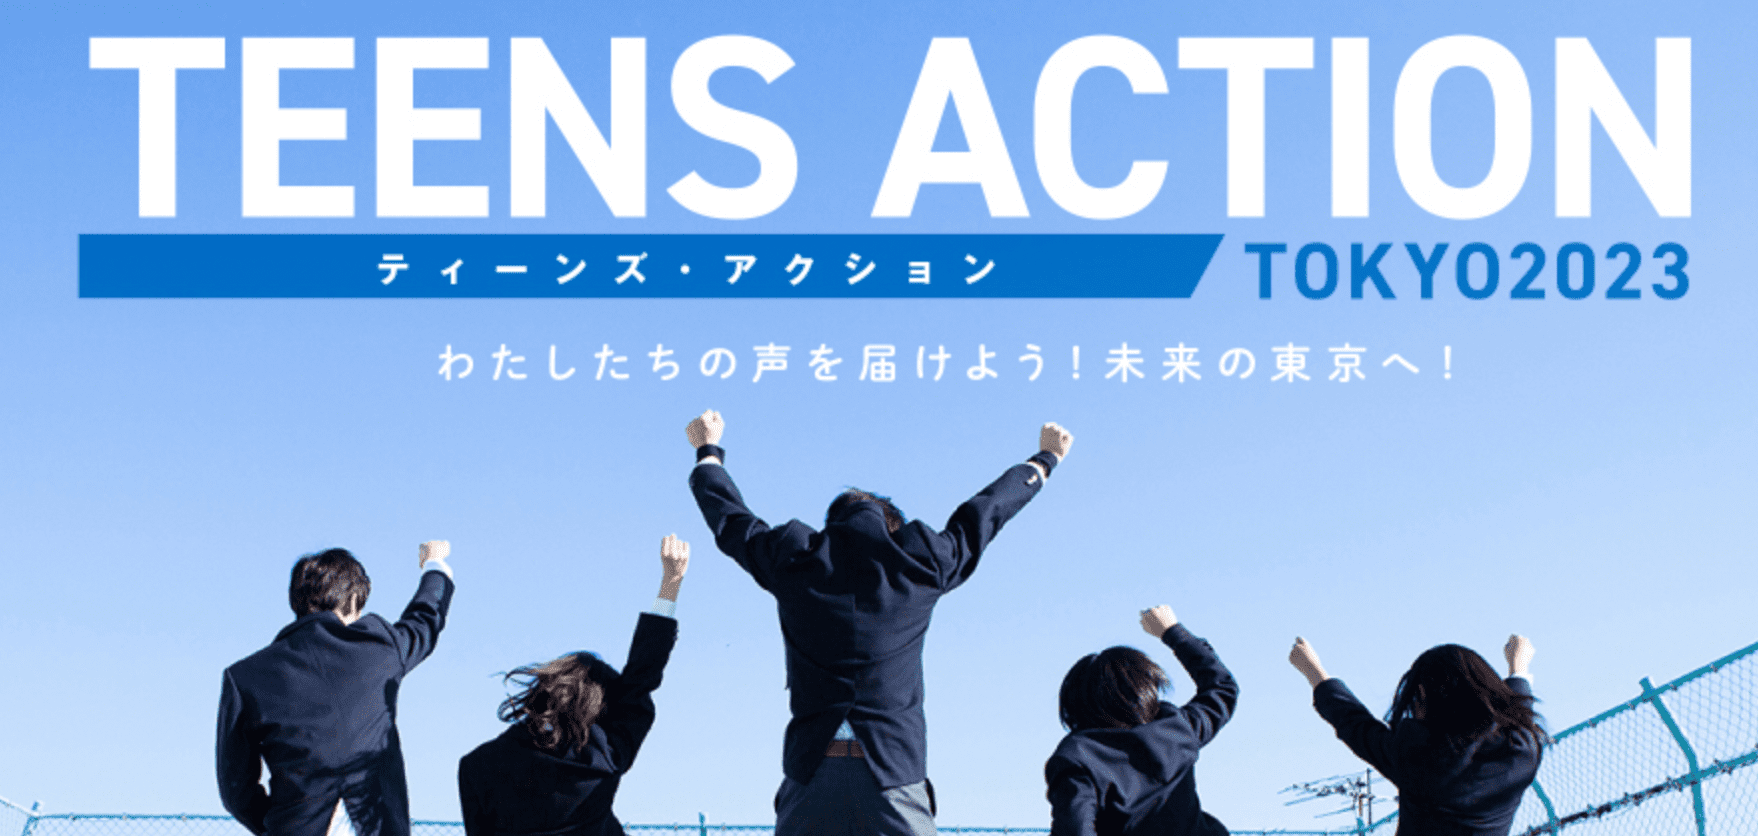 中高生対象！ わたしたちの声を届けよう！未来の東京へ！ TEENS ACTION TOKYO2023 【7/12(水)17時 締切】